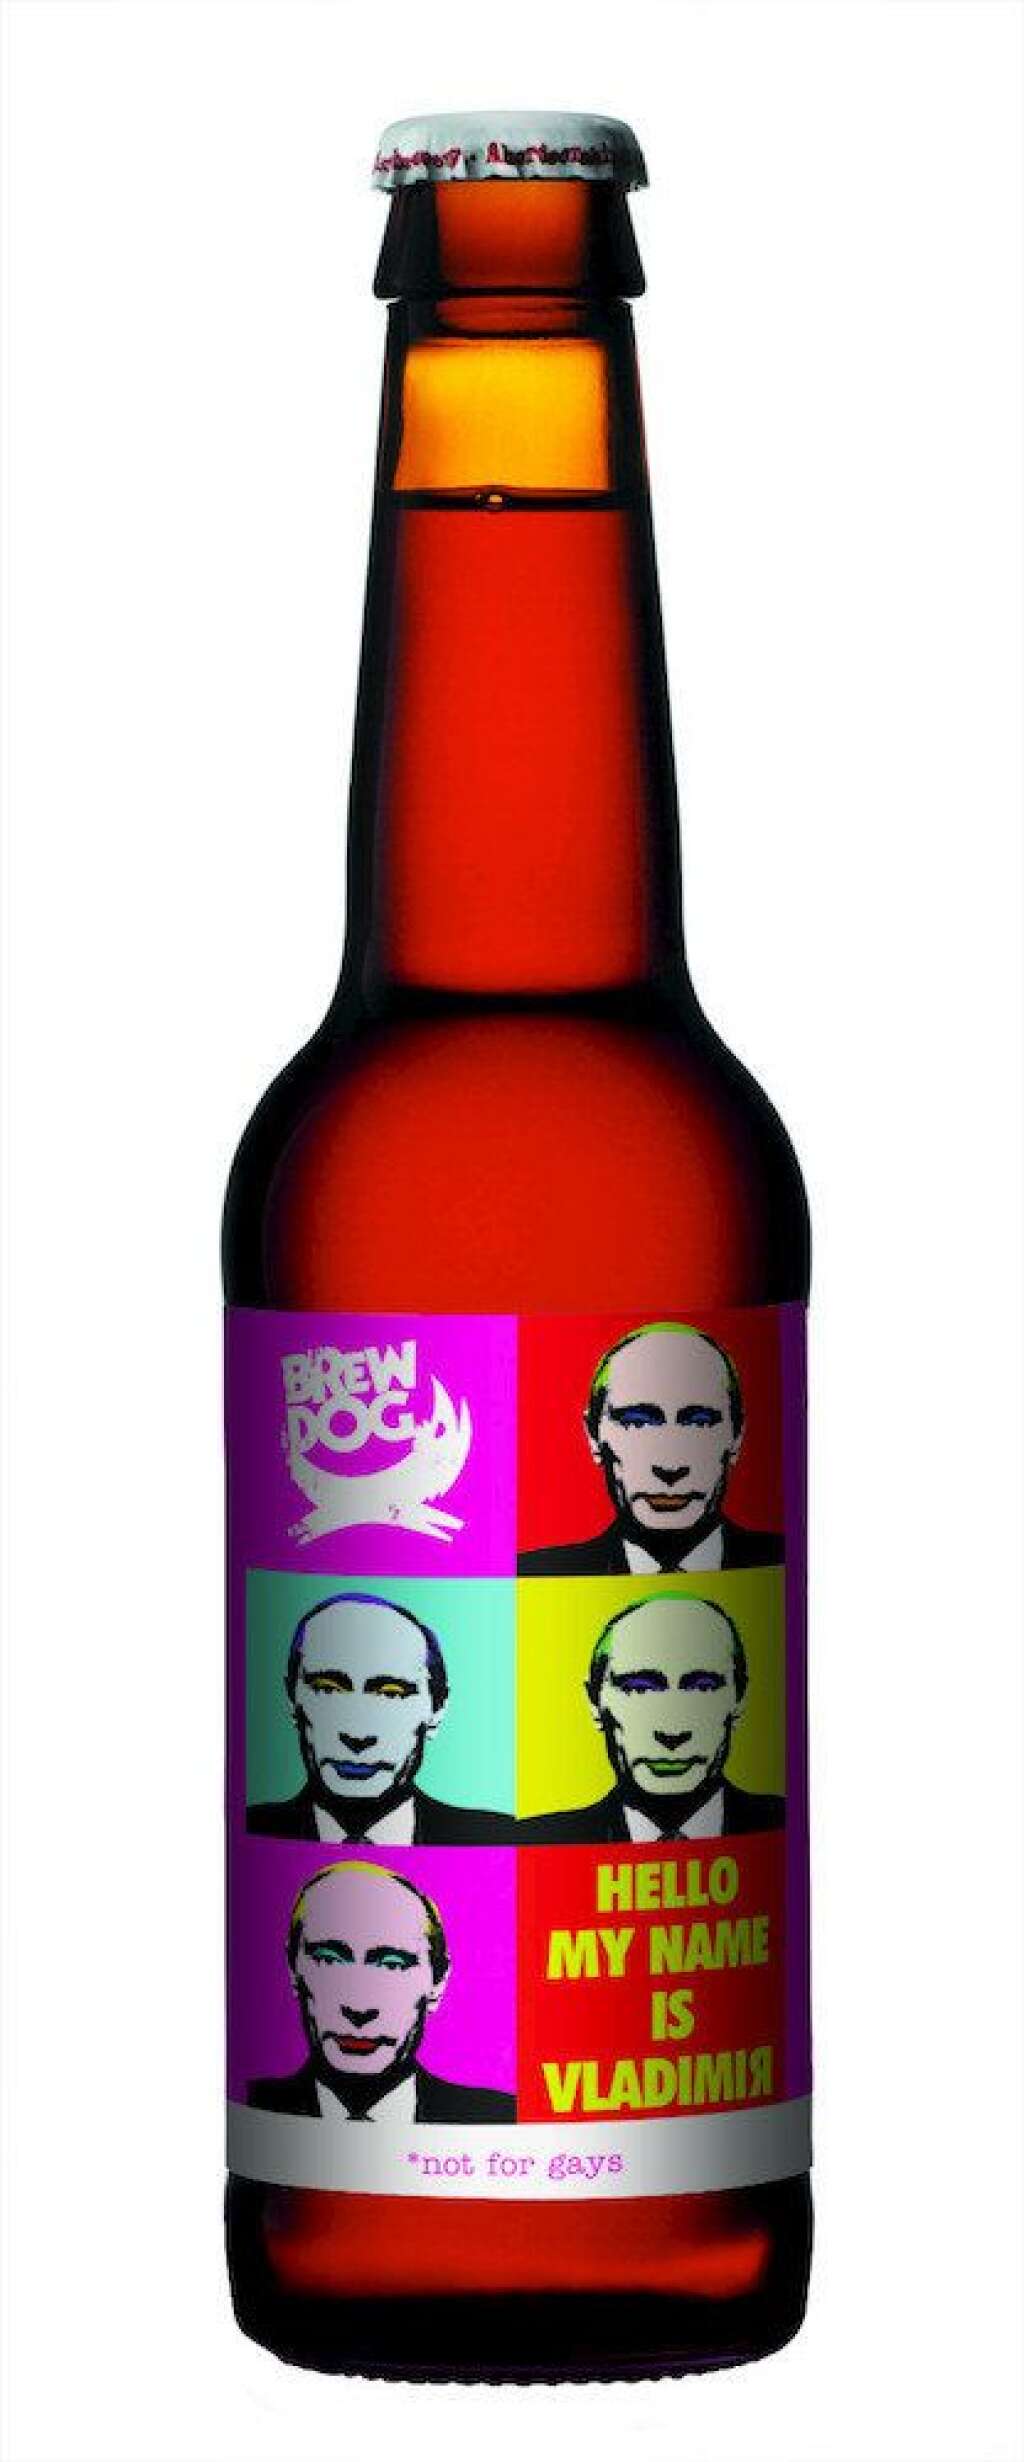 La bière BrewDog - C'est la première bière engagée. Une marque écossaise a sorti<a href="http://www.huffingtonpost.co.uk/2014/02/04/beer-hello-my-name-is-vladimir-mocks-russian-president-winter-games-notforgays_n_4722065.html?utm_hp_ref=uk" target="_blank"> une cuvée anti-Poutine</a>. <a href="https://twitter.com/brewdog/status/430737190256005120" target="_blank">Un colis spécial</a> a d'ailleurs été envoyé au Kremlin...